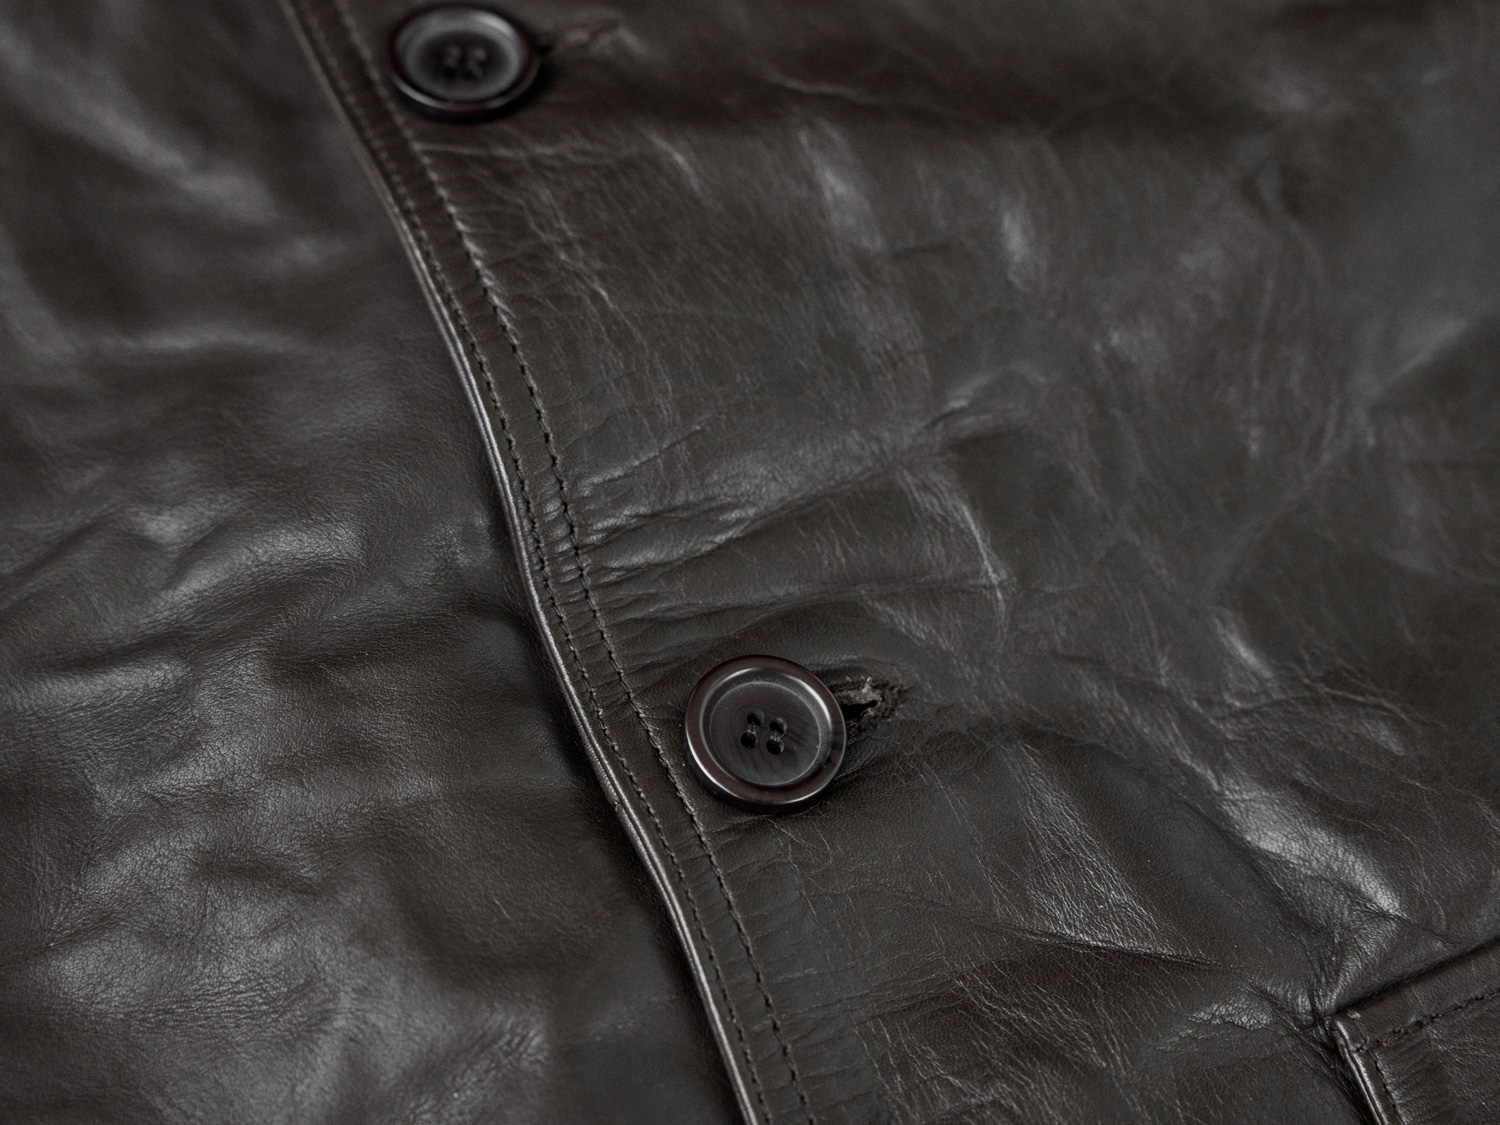 Cossack Jacket - Horsehide Leather - AVI LEATHER